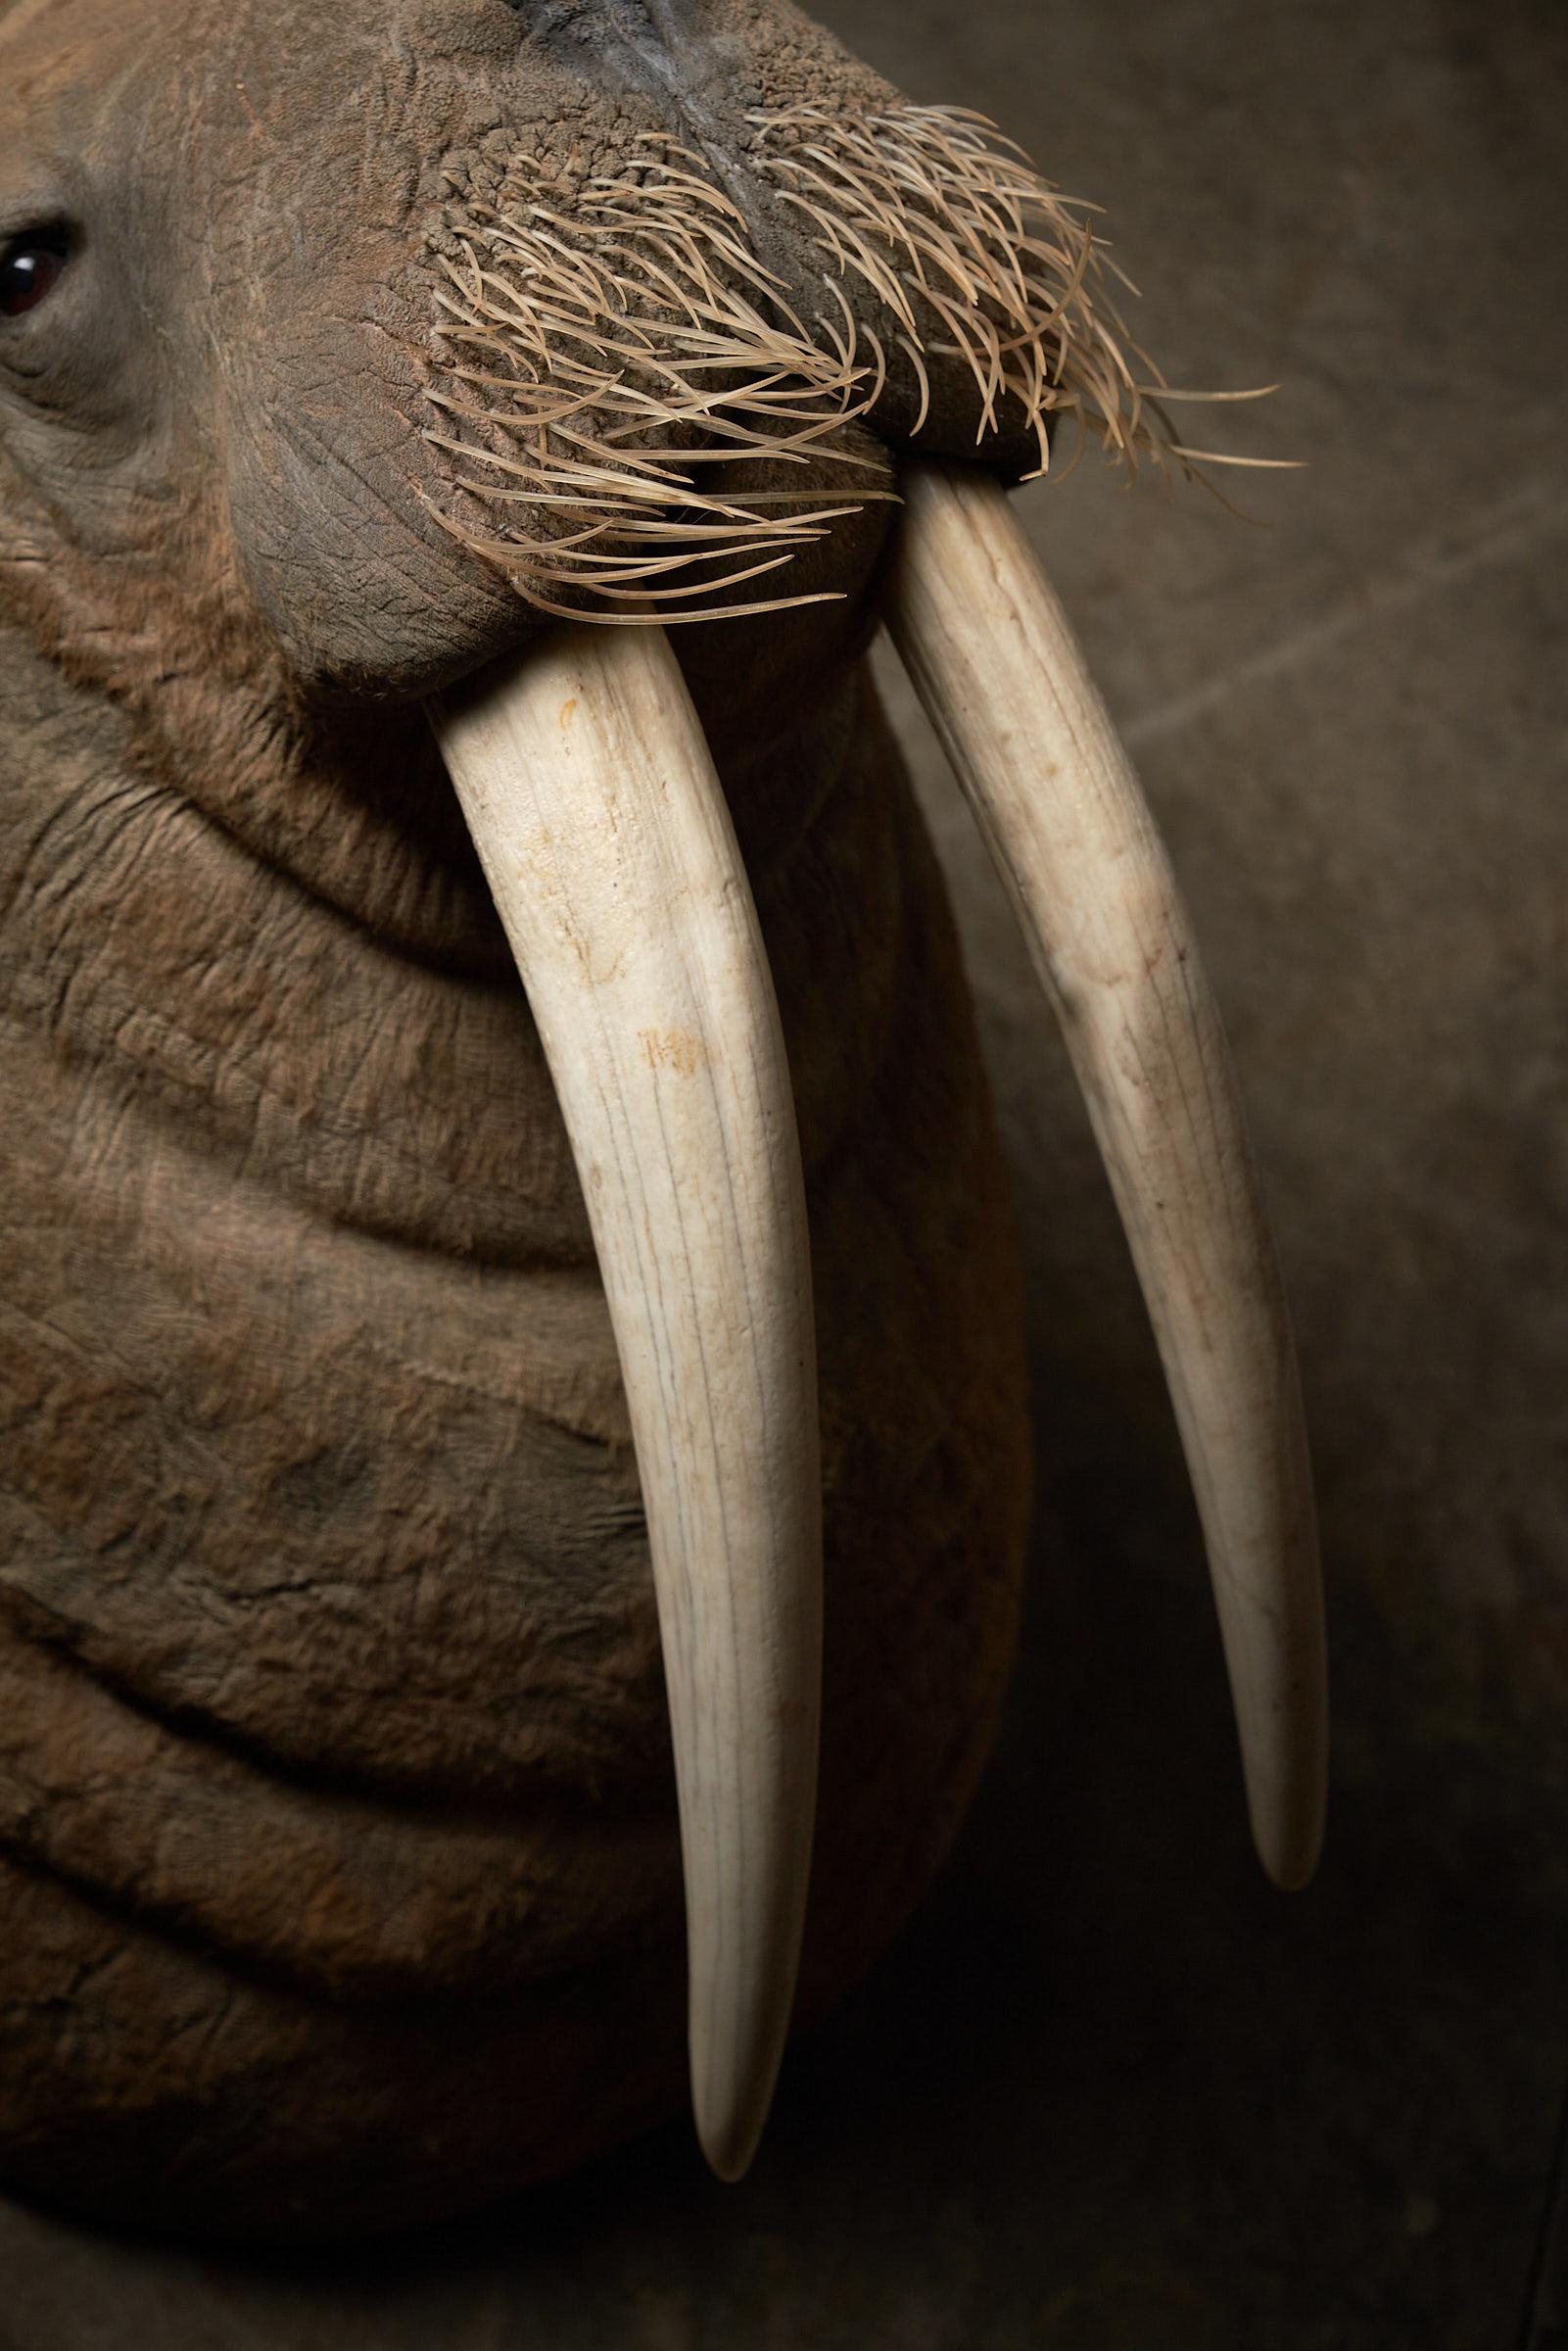 walrus head mount